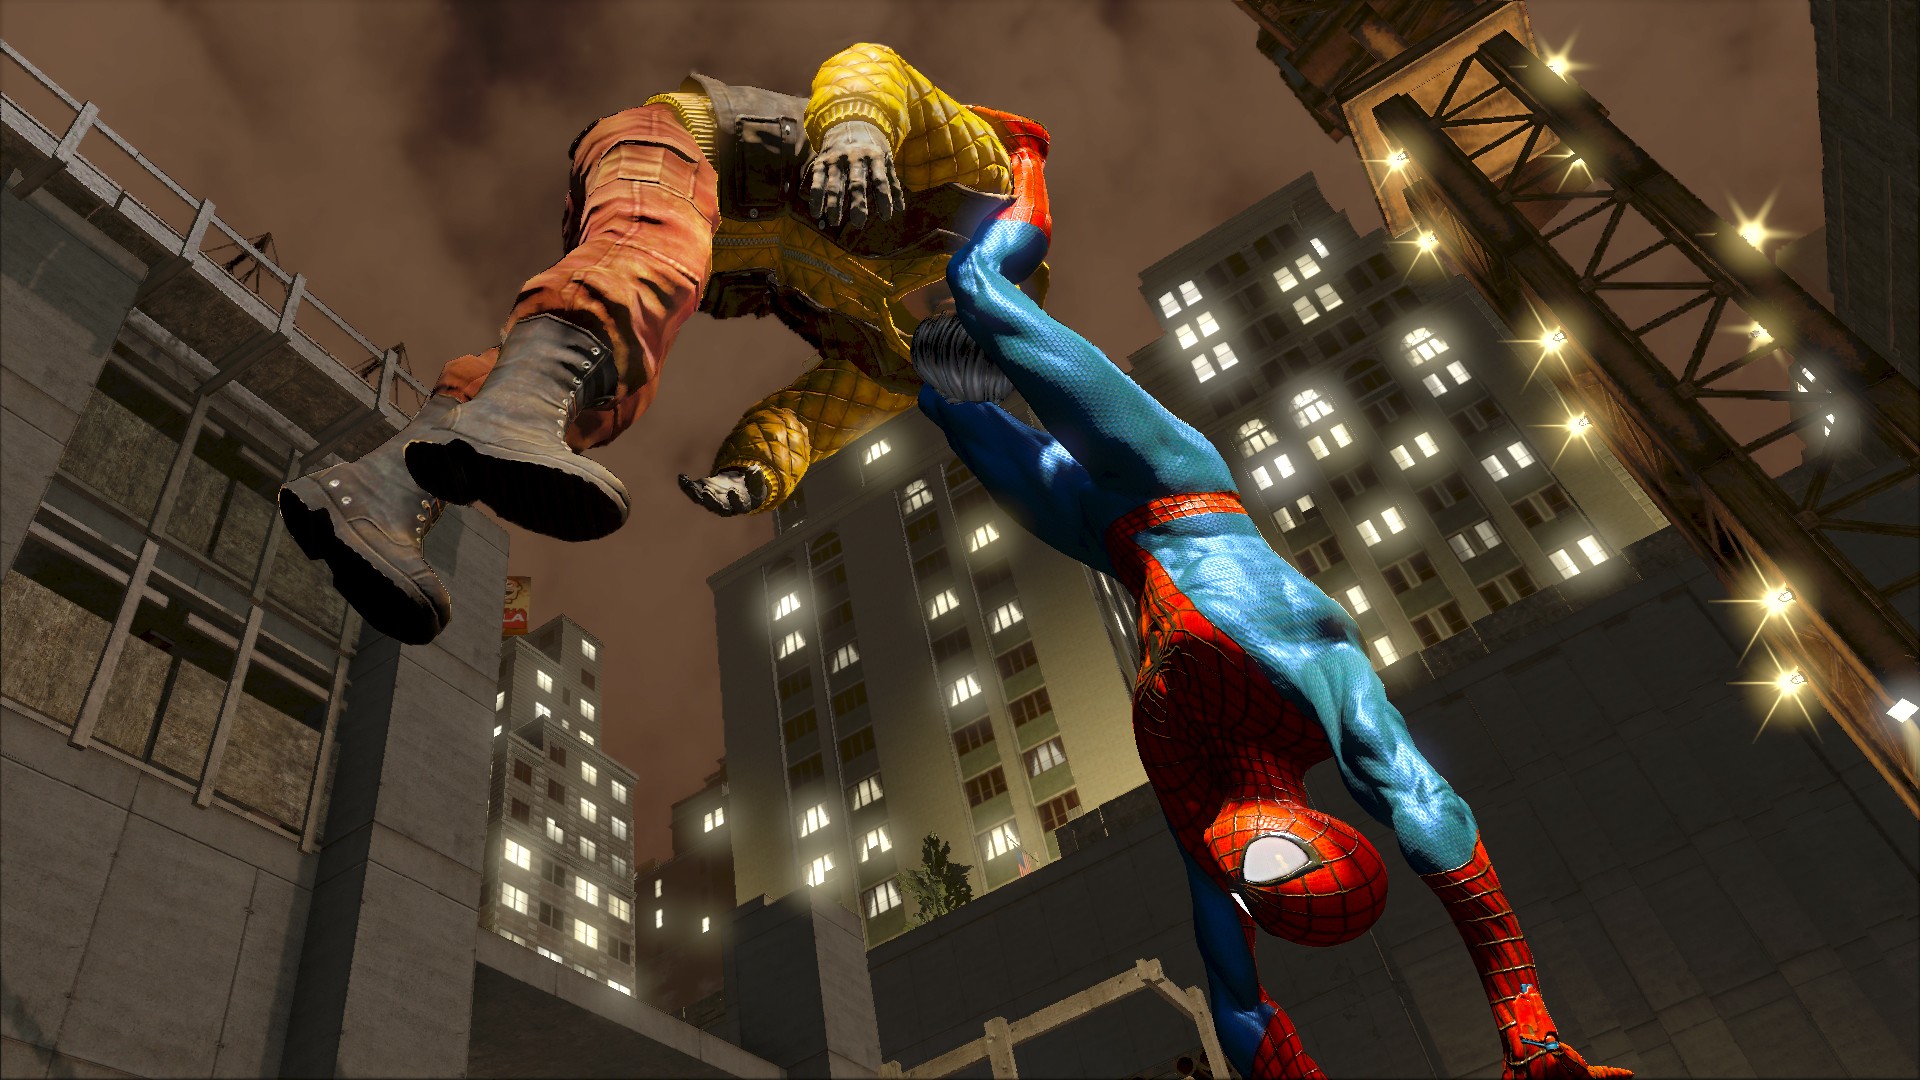 Я хочу человека играть. The amazing Spider-man 2 игра. The amazing Spider-man (игра, 2012). Новый человек паук 2 игра. Человек паук амазинг 2 игра.